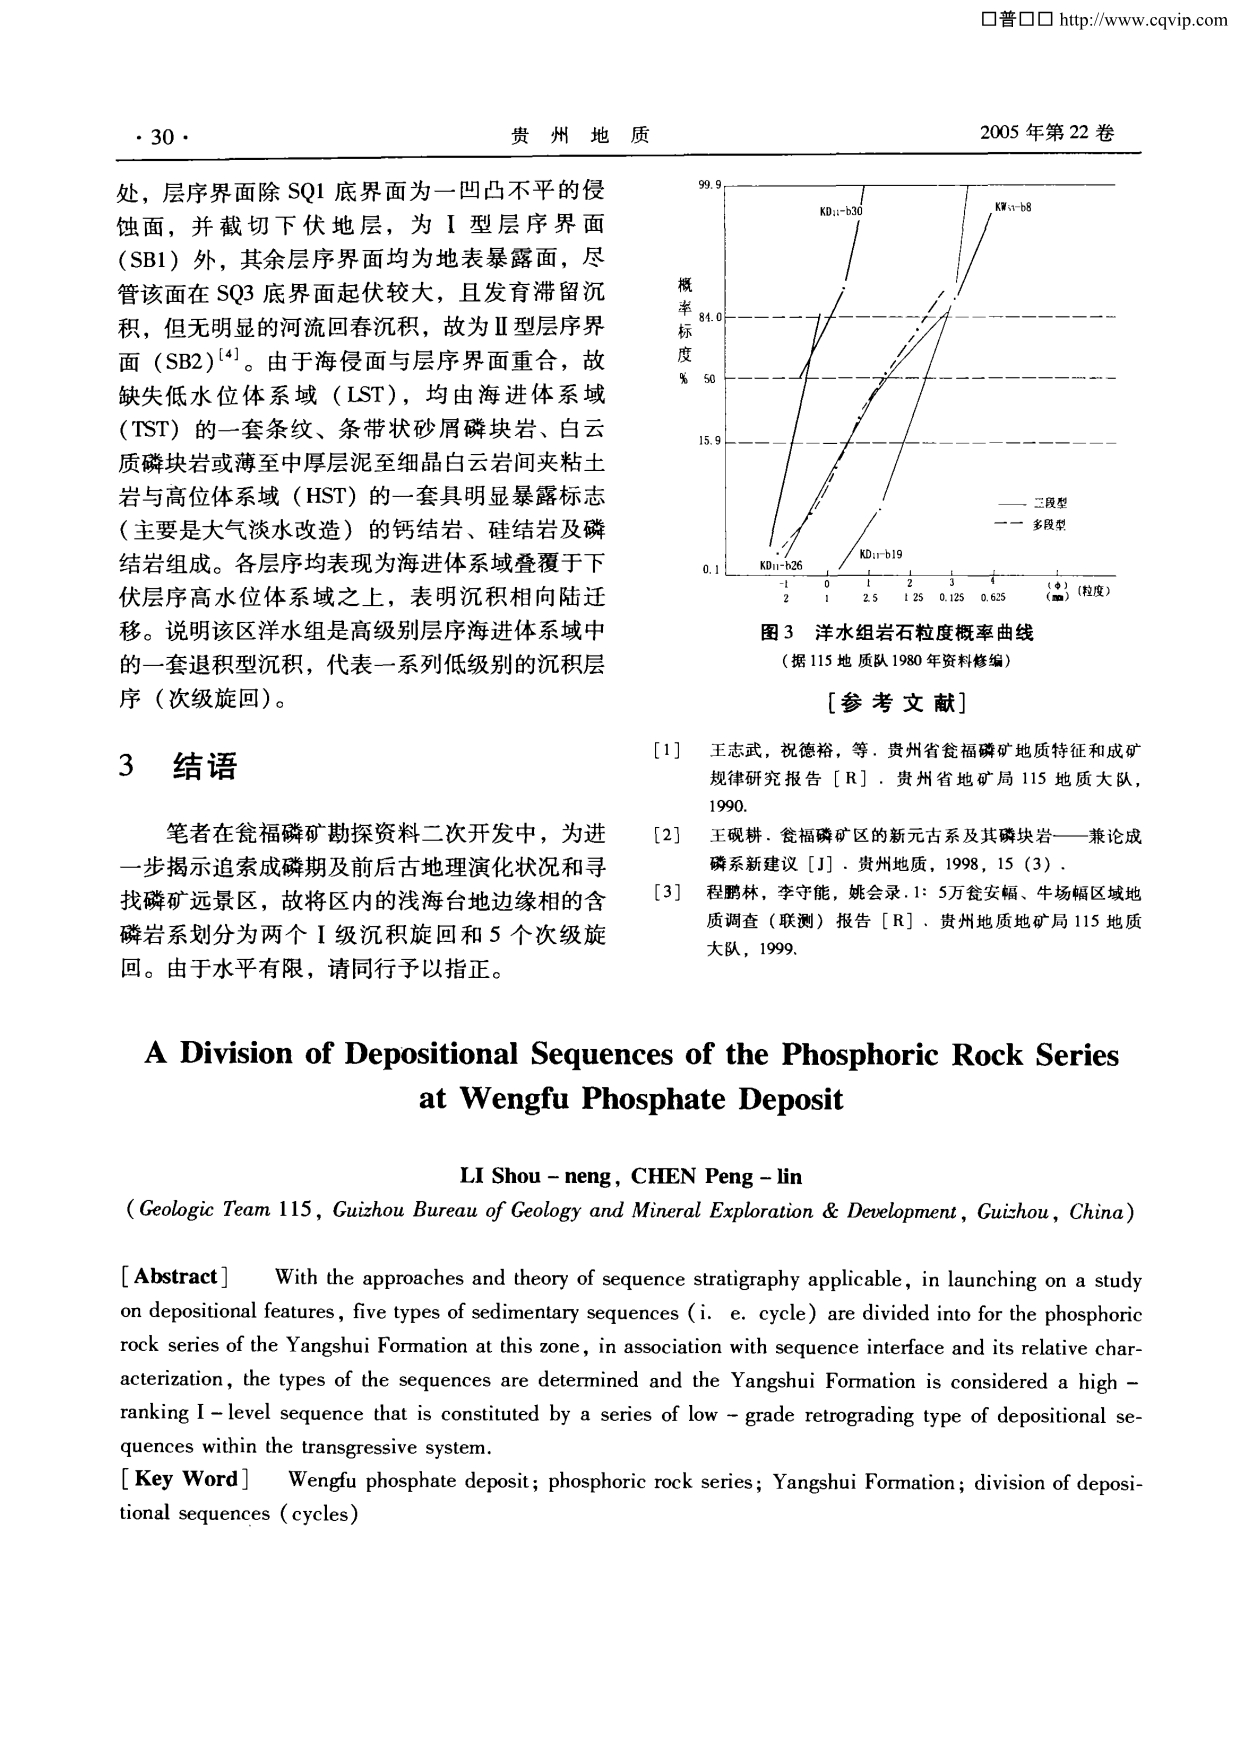 贵州瓮福磷矿床含磷岩系沉积层序的划分_第5页